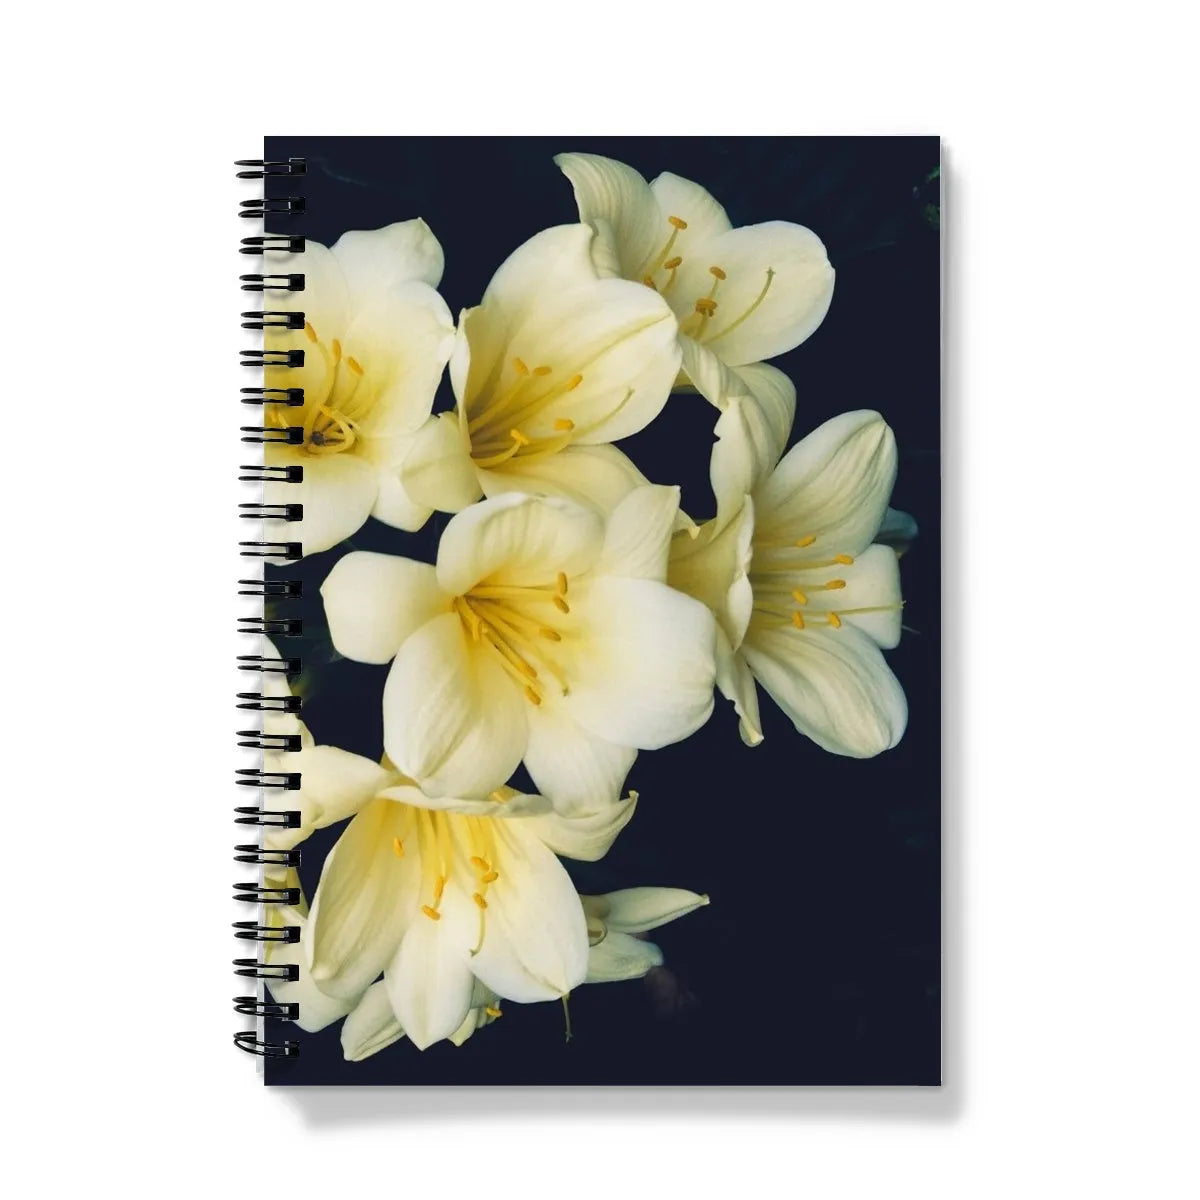 Flower Power Too Notebook - A5 - Graph Paper - Notebooks & Notepads - Aesthetic Art